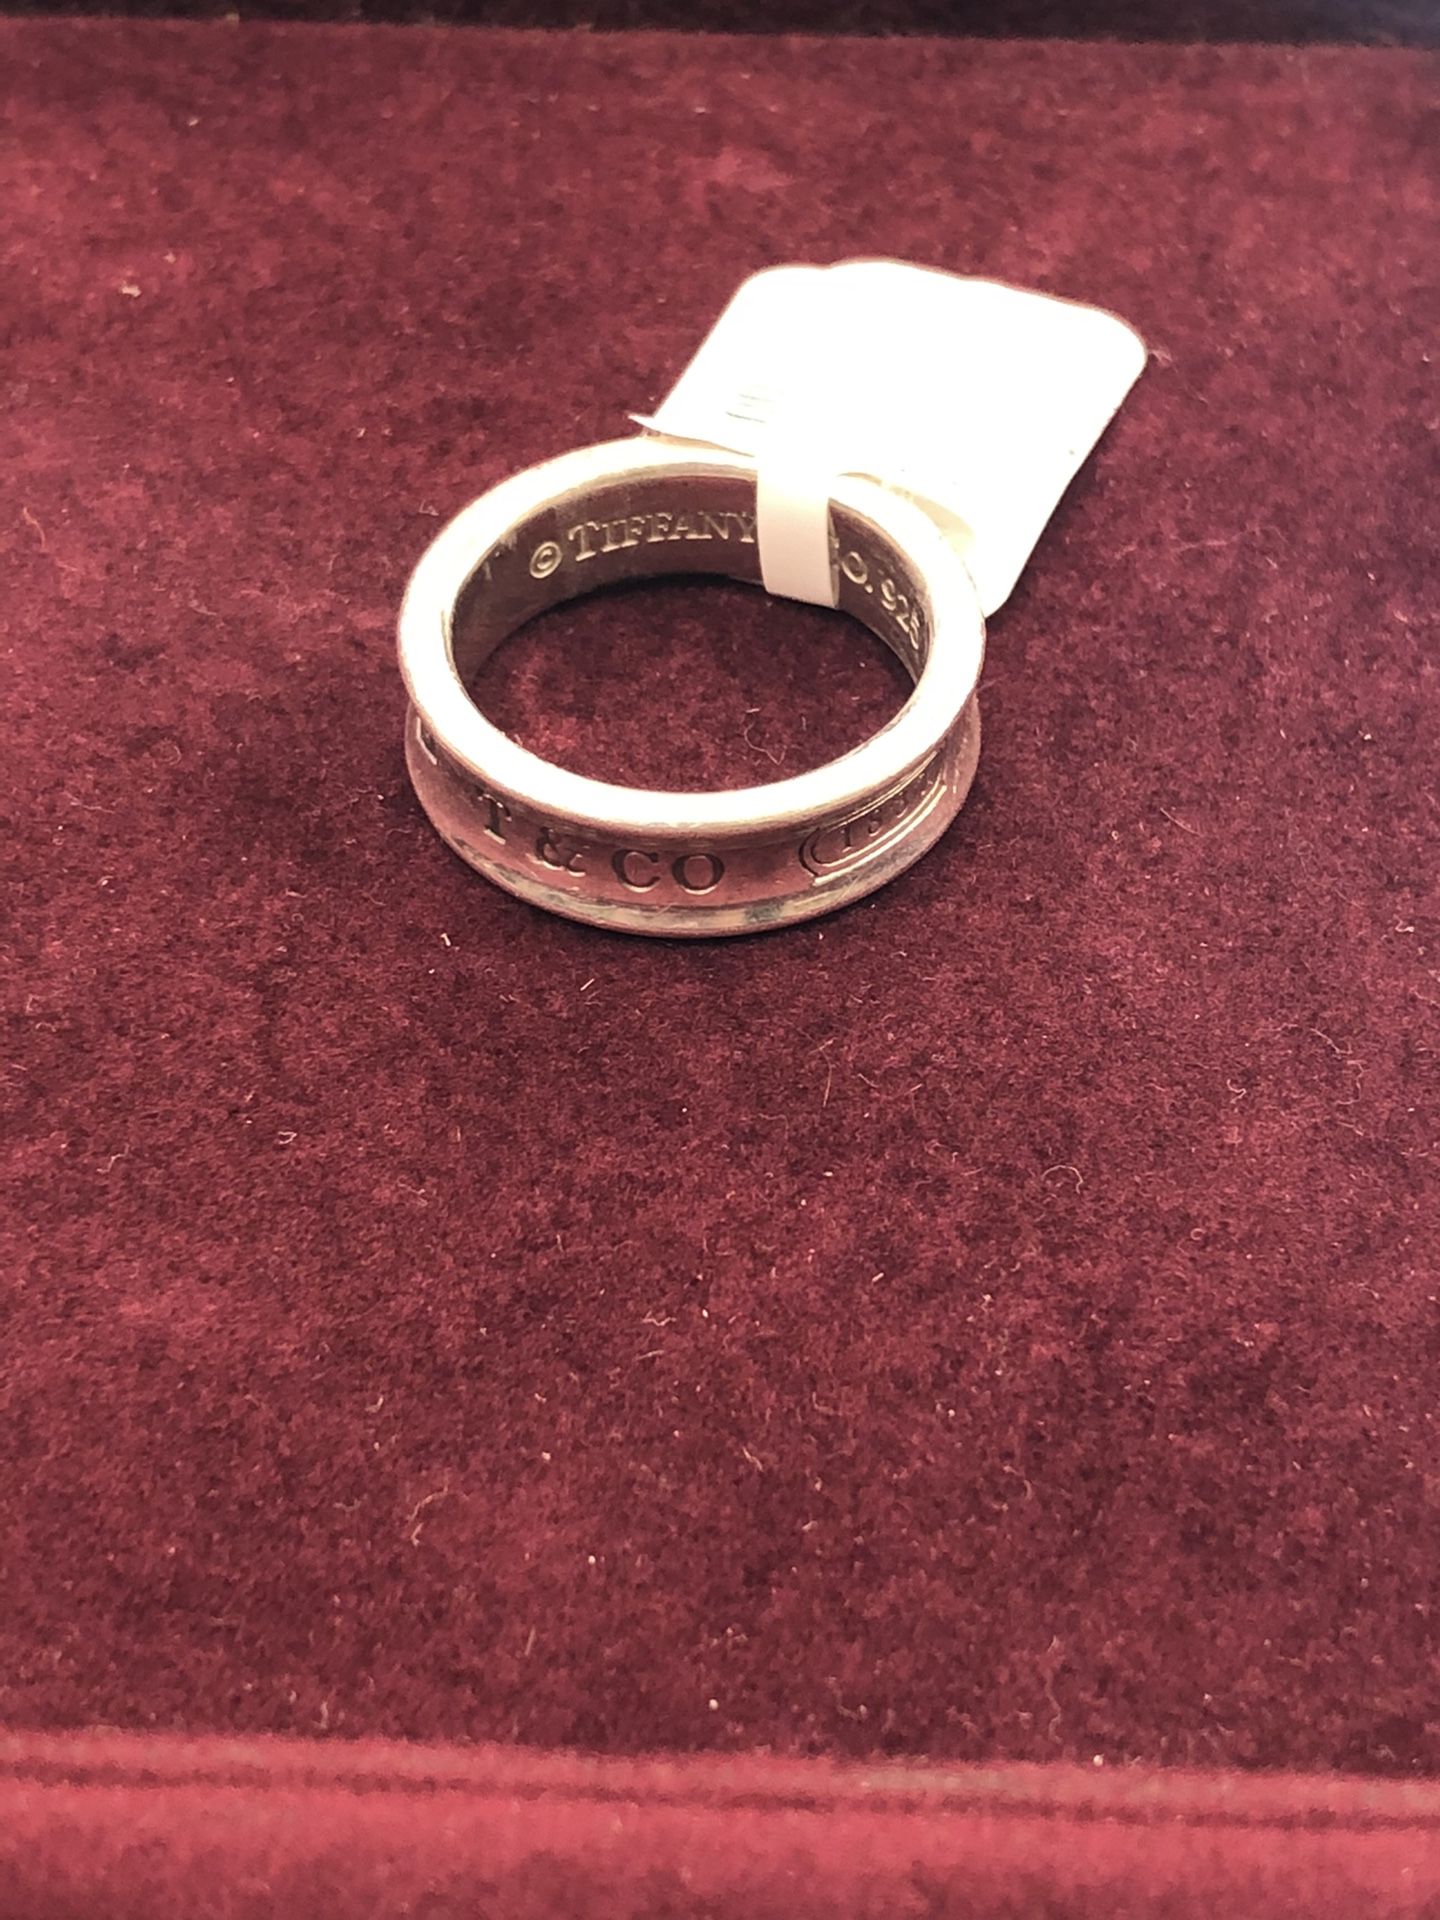 Tiffany Co. Ring